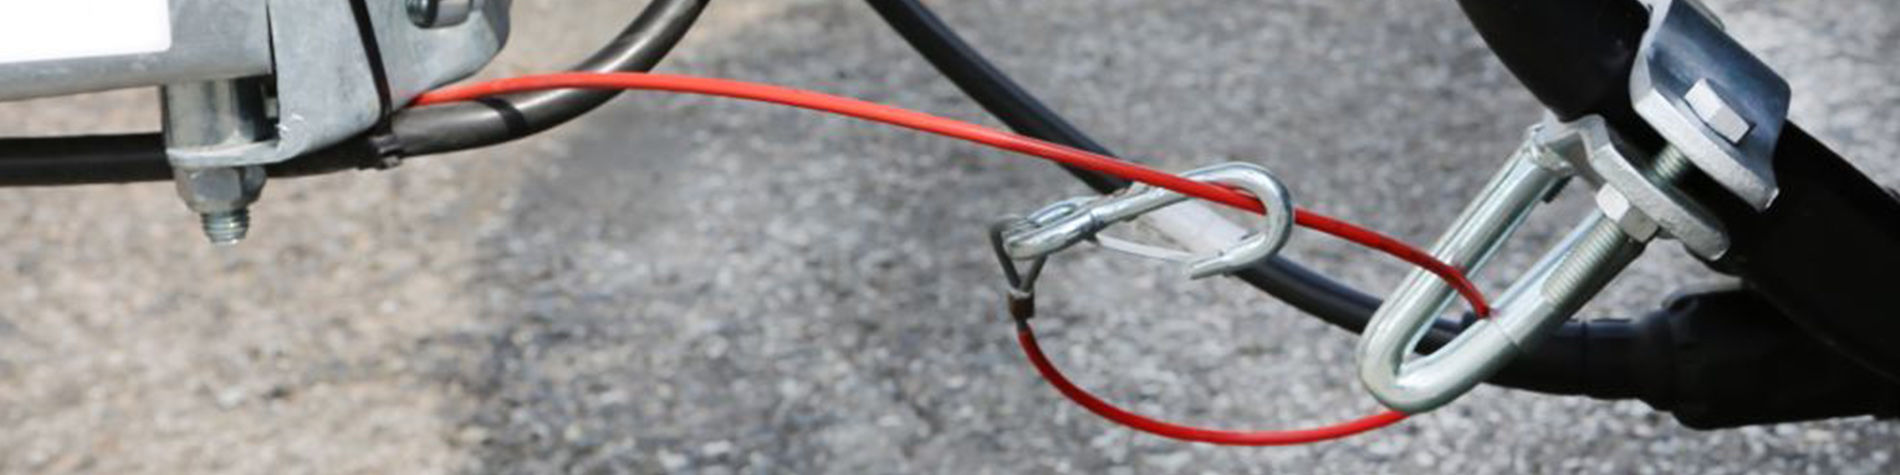 Crochet pour fixation de câble de rupture remorque - accessoire remorque